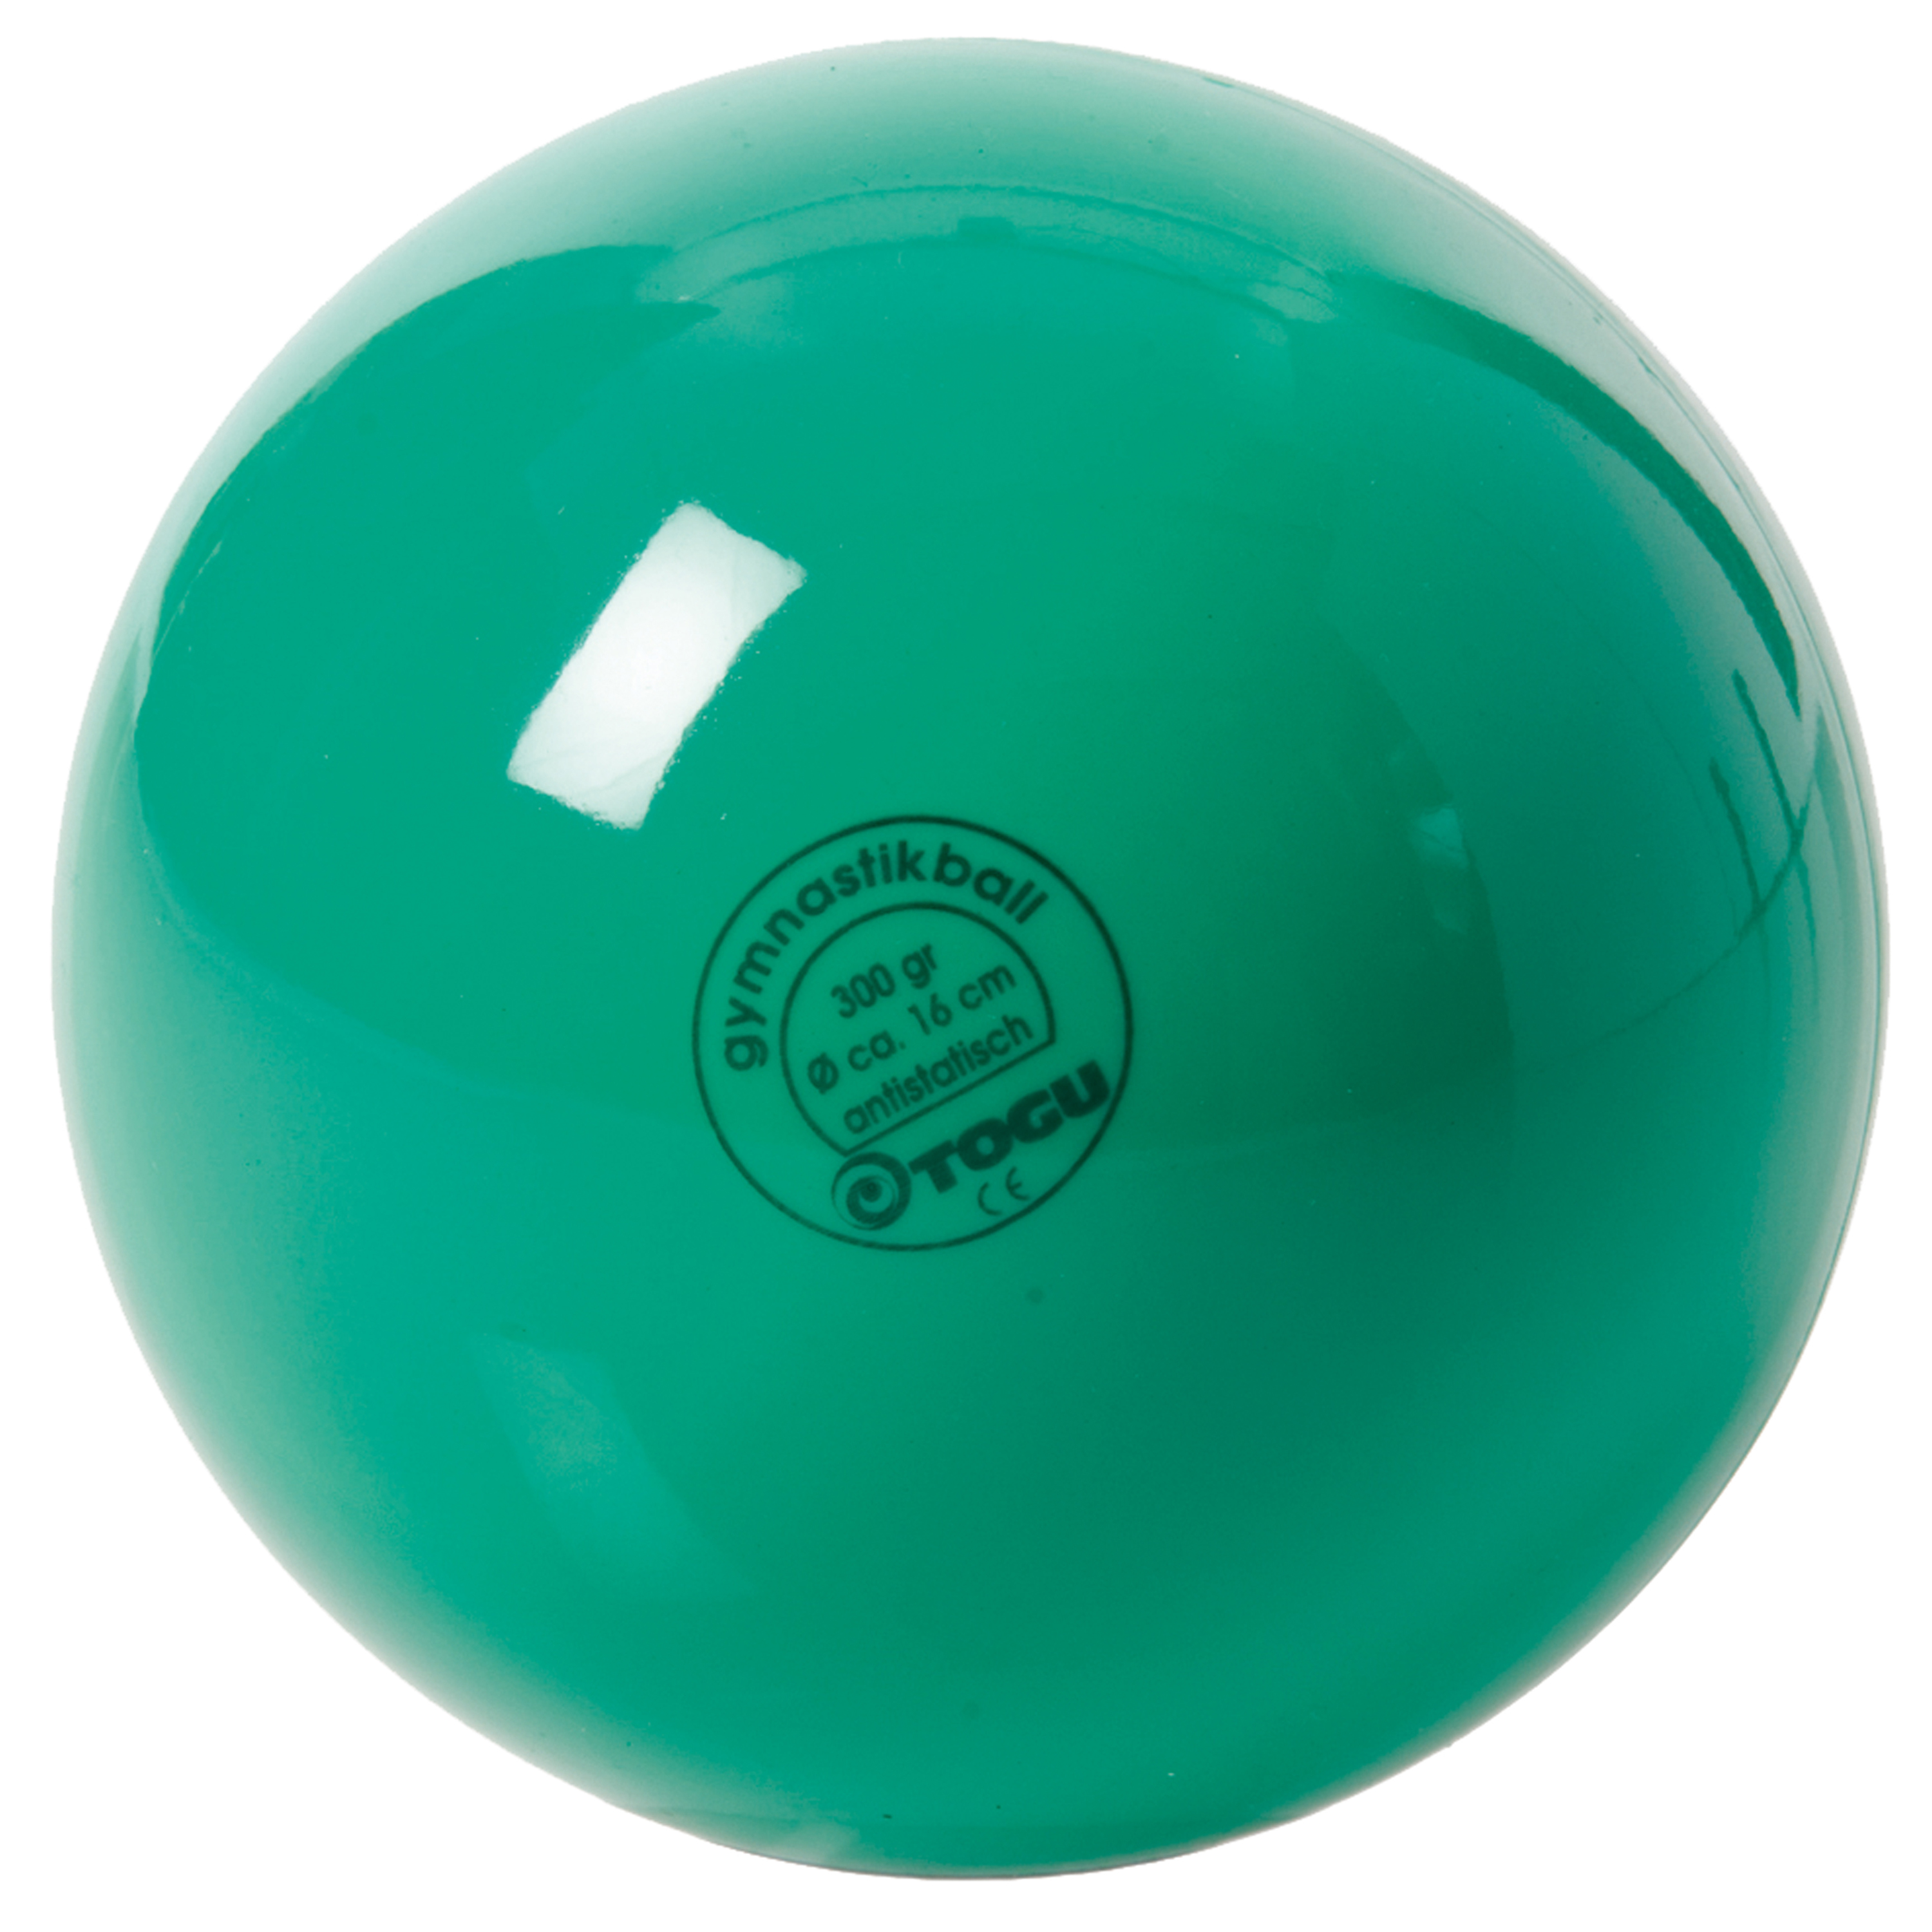 Gymnastikball 'Standard - grün', Ø 16 cm, 300 g